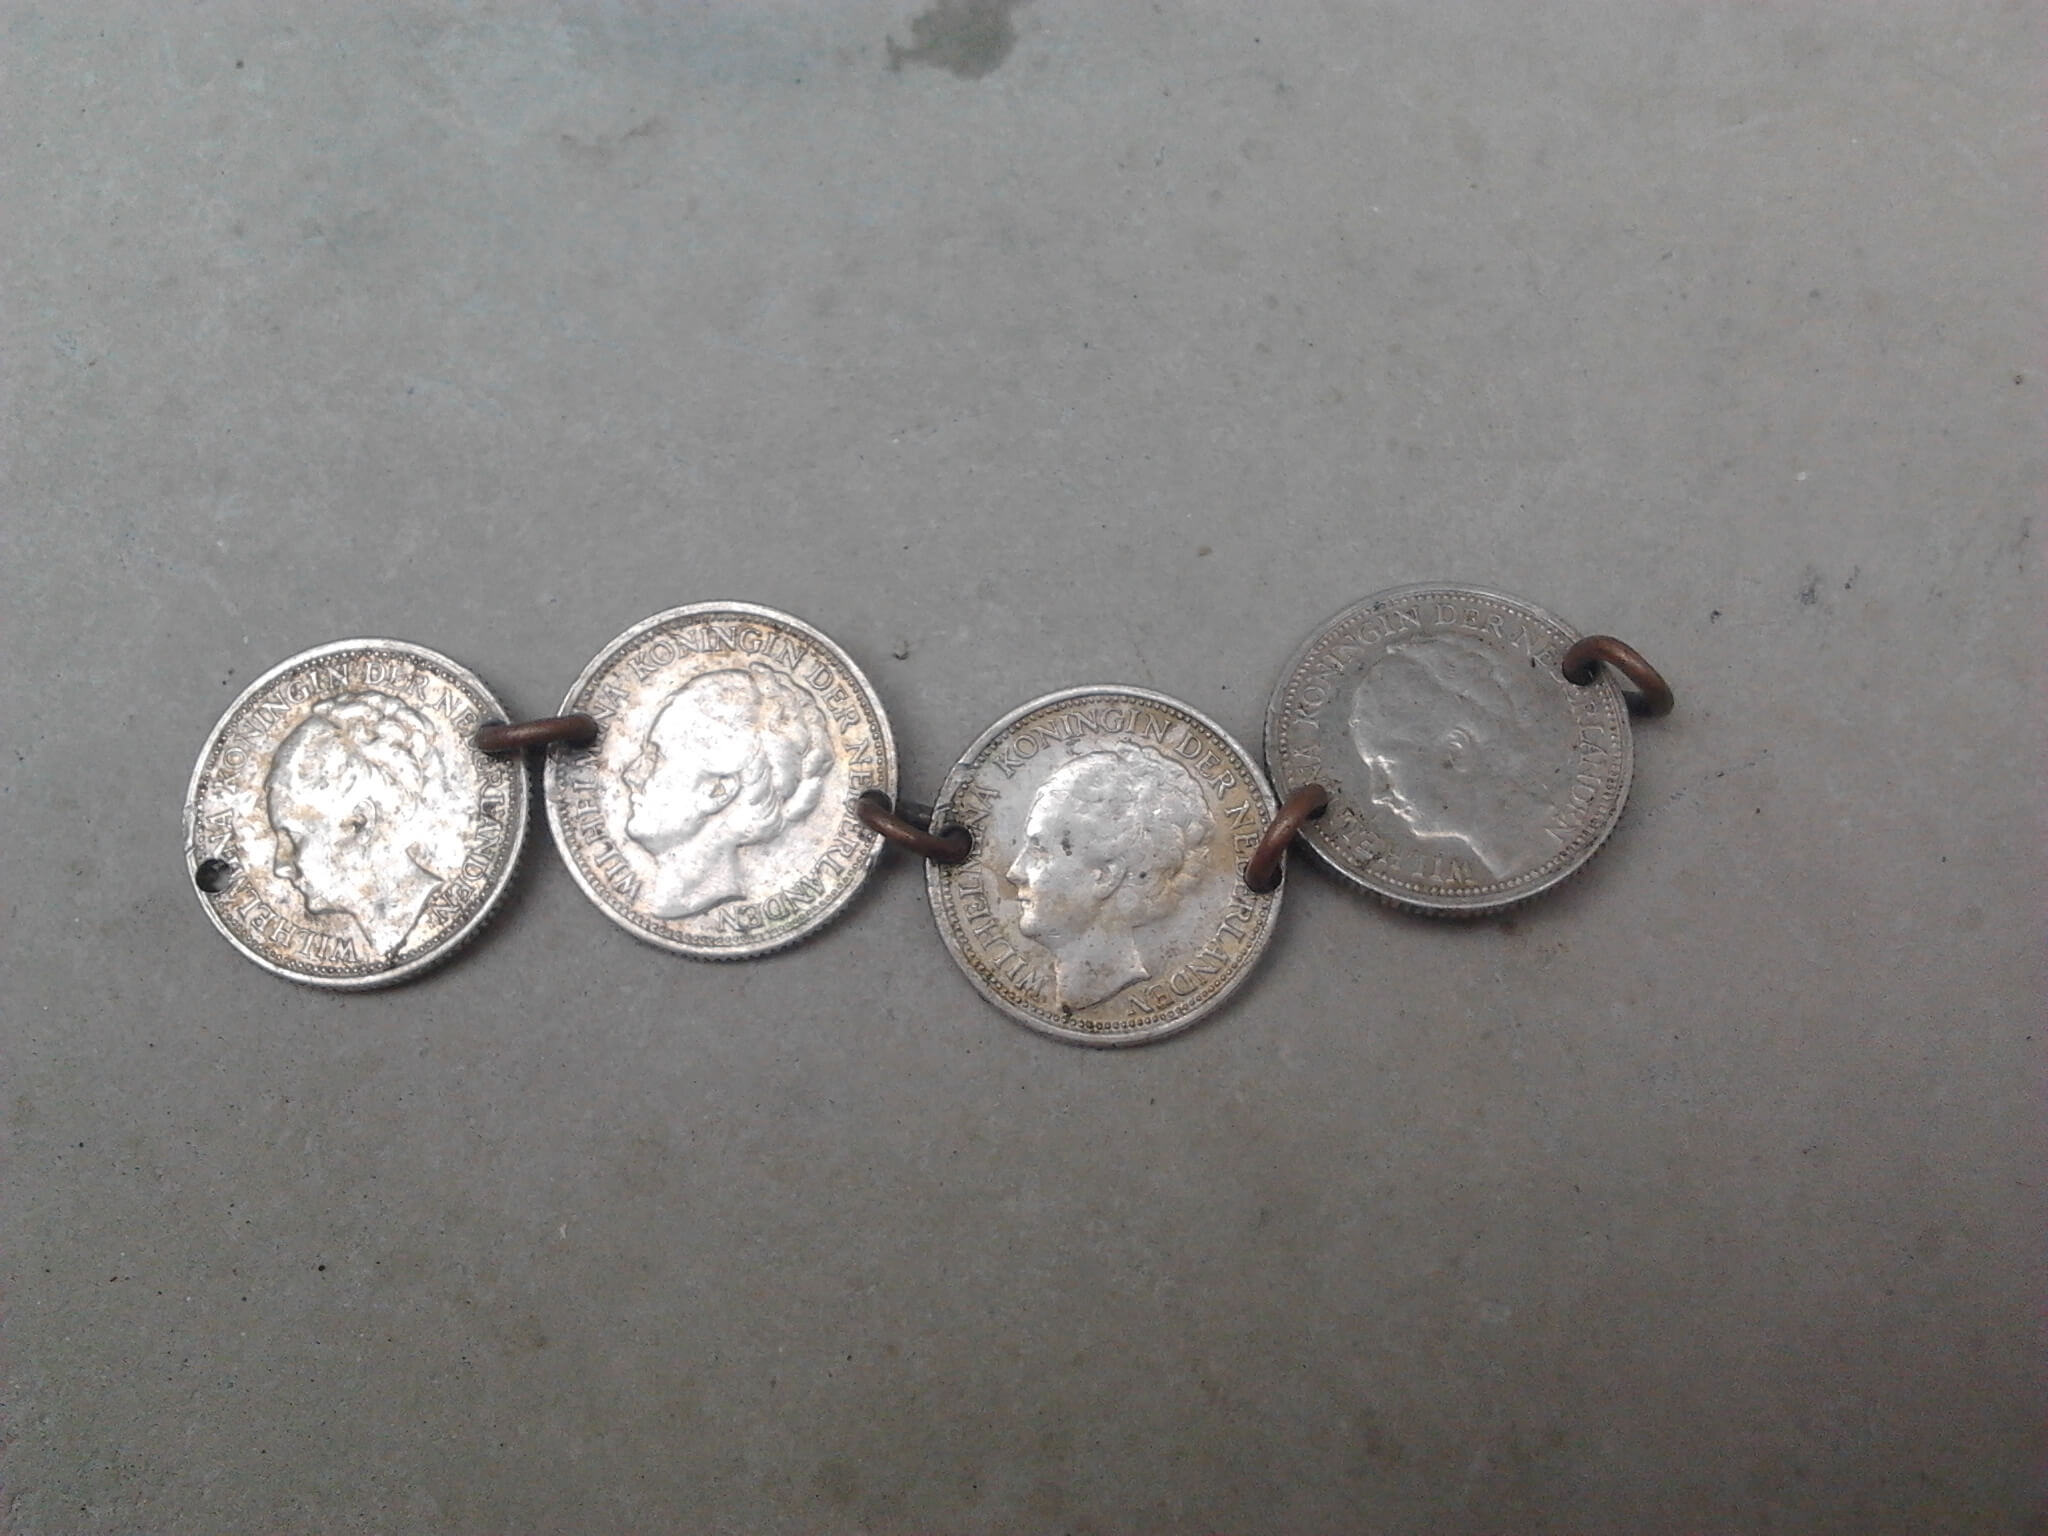 armband wo2 gemaakt van 10 cent muntjes uit de tweede wereldoorlog